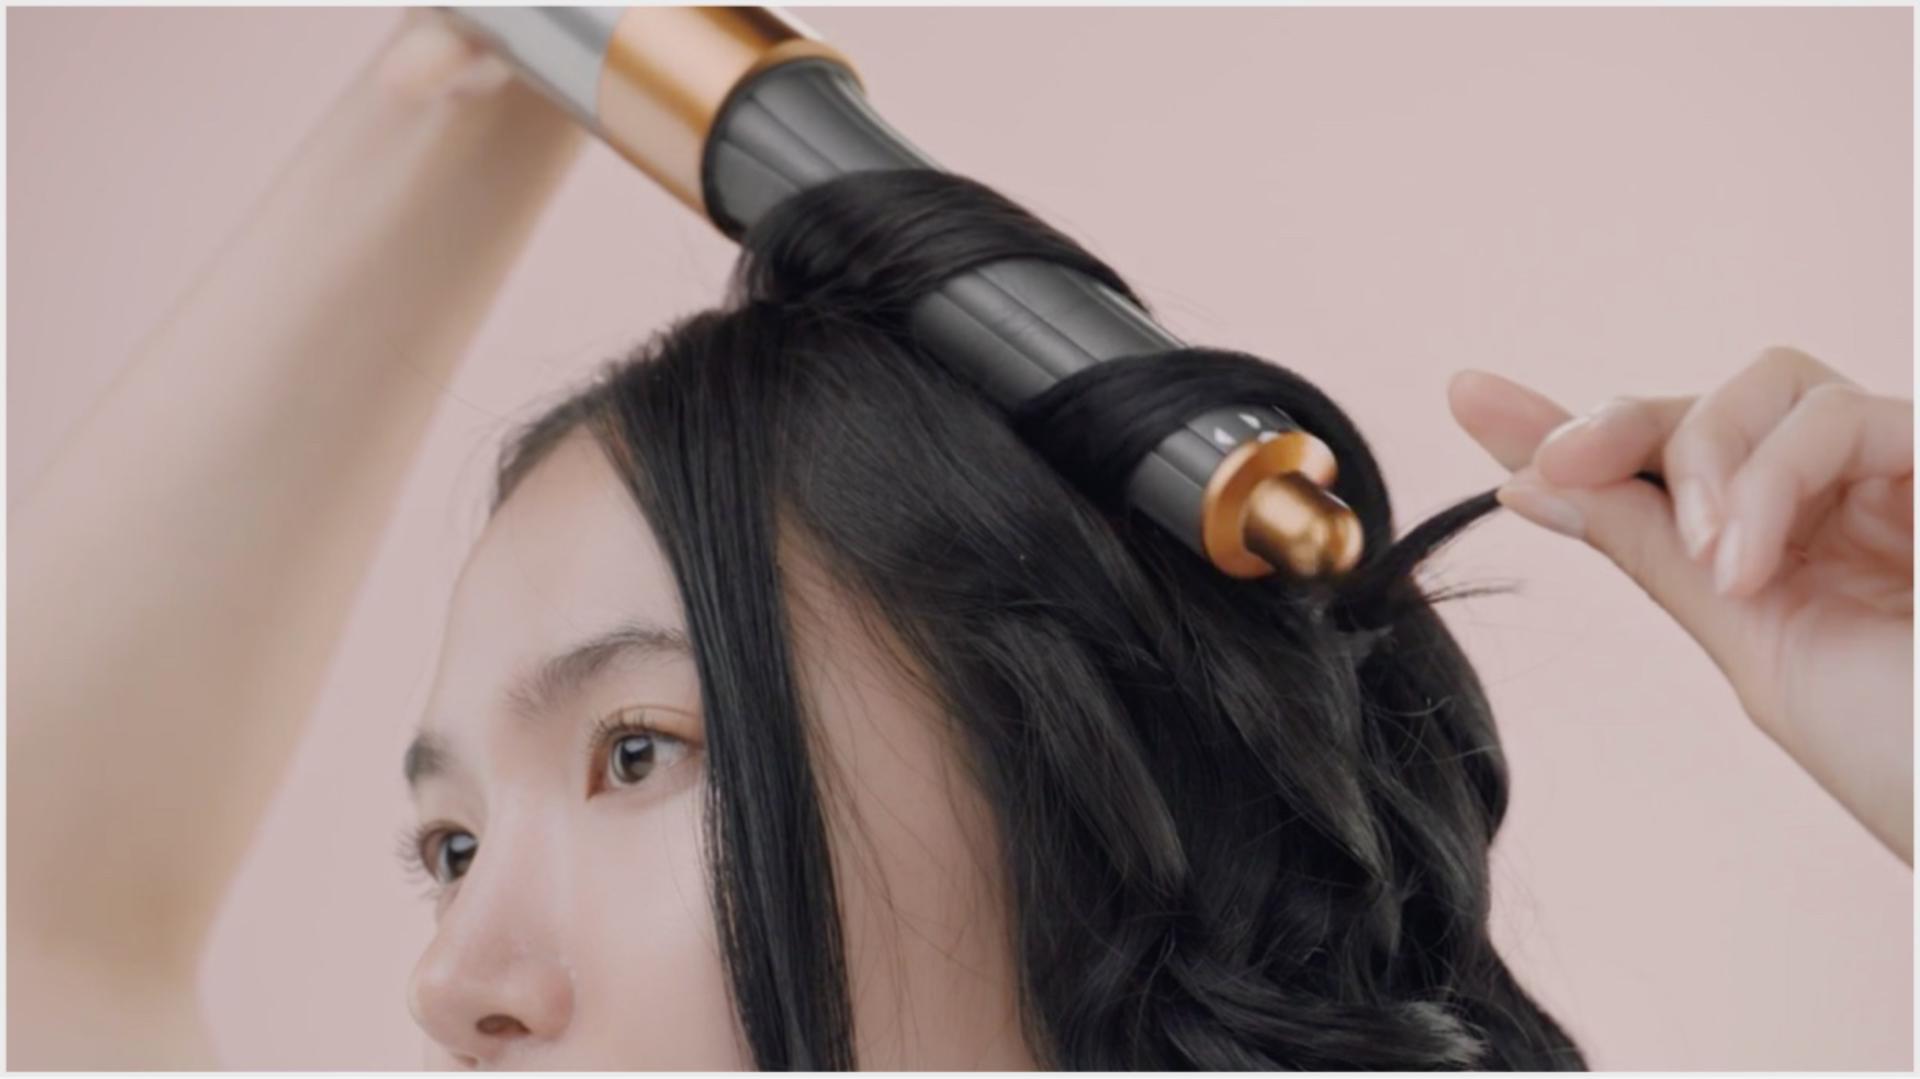 Dyson saç bakım teknolojisiyle saçını şekillendiren bir kadın.